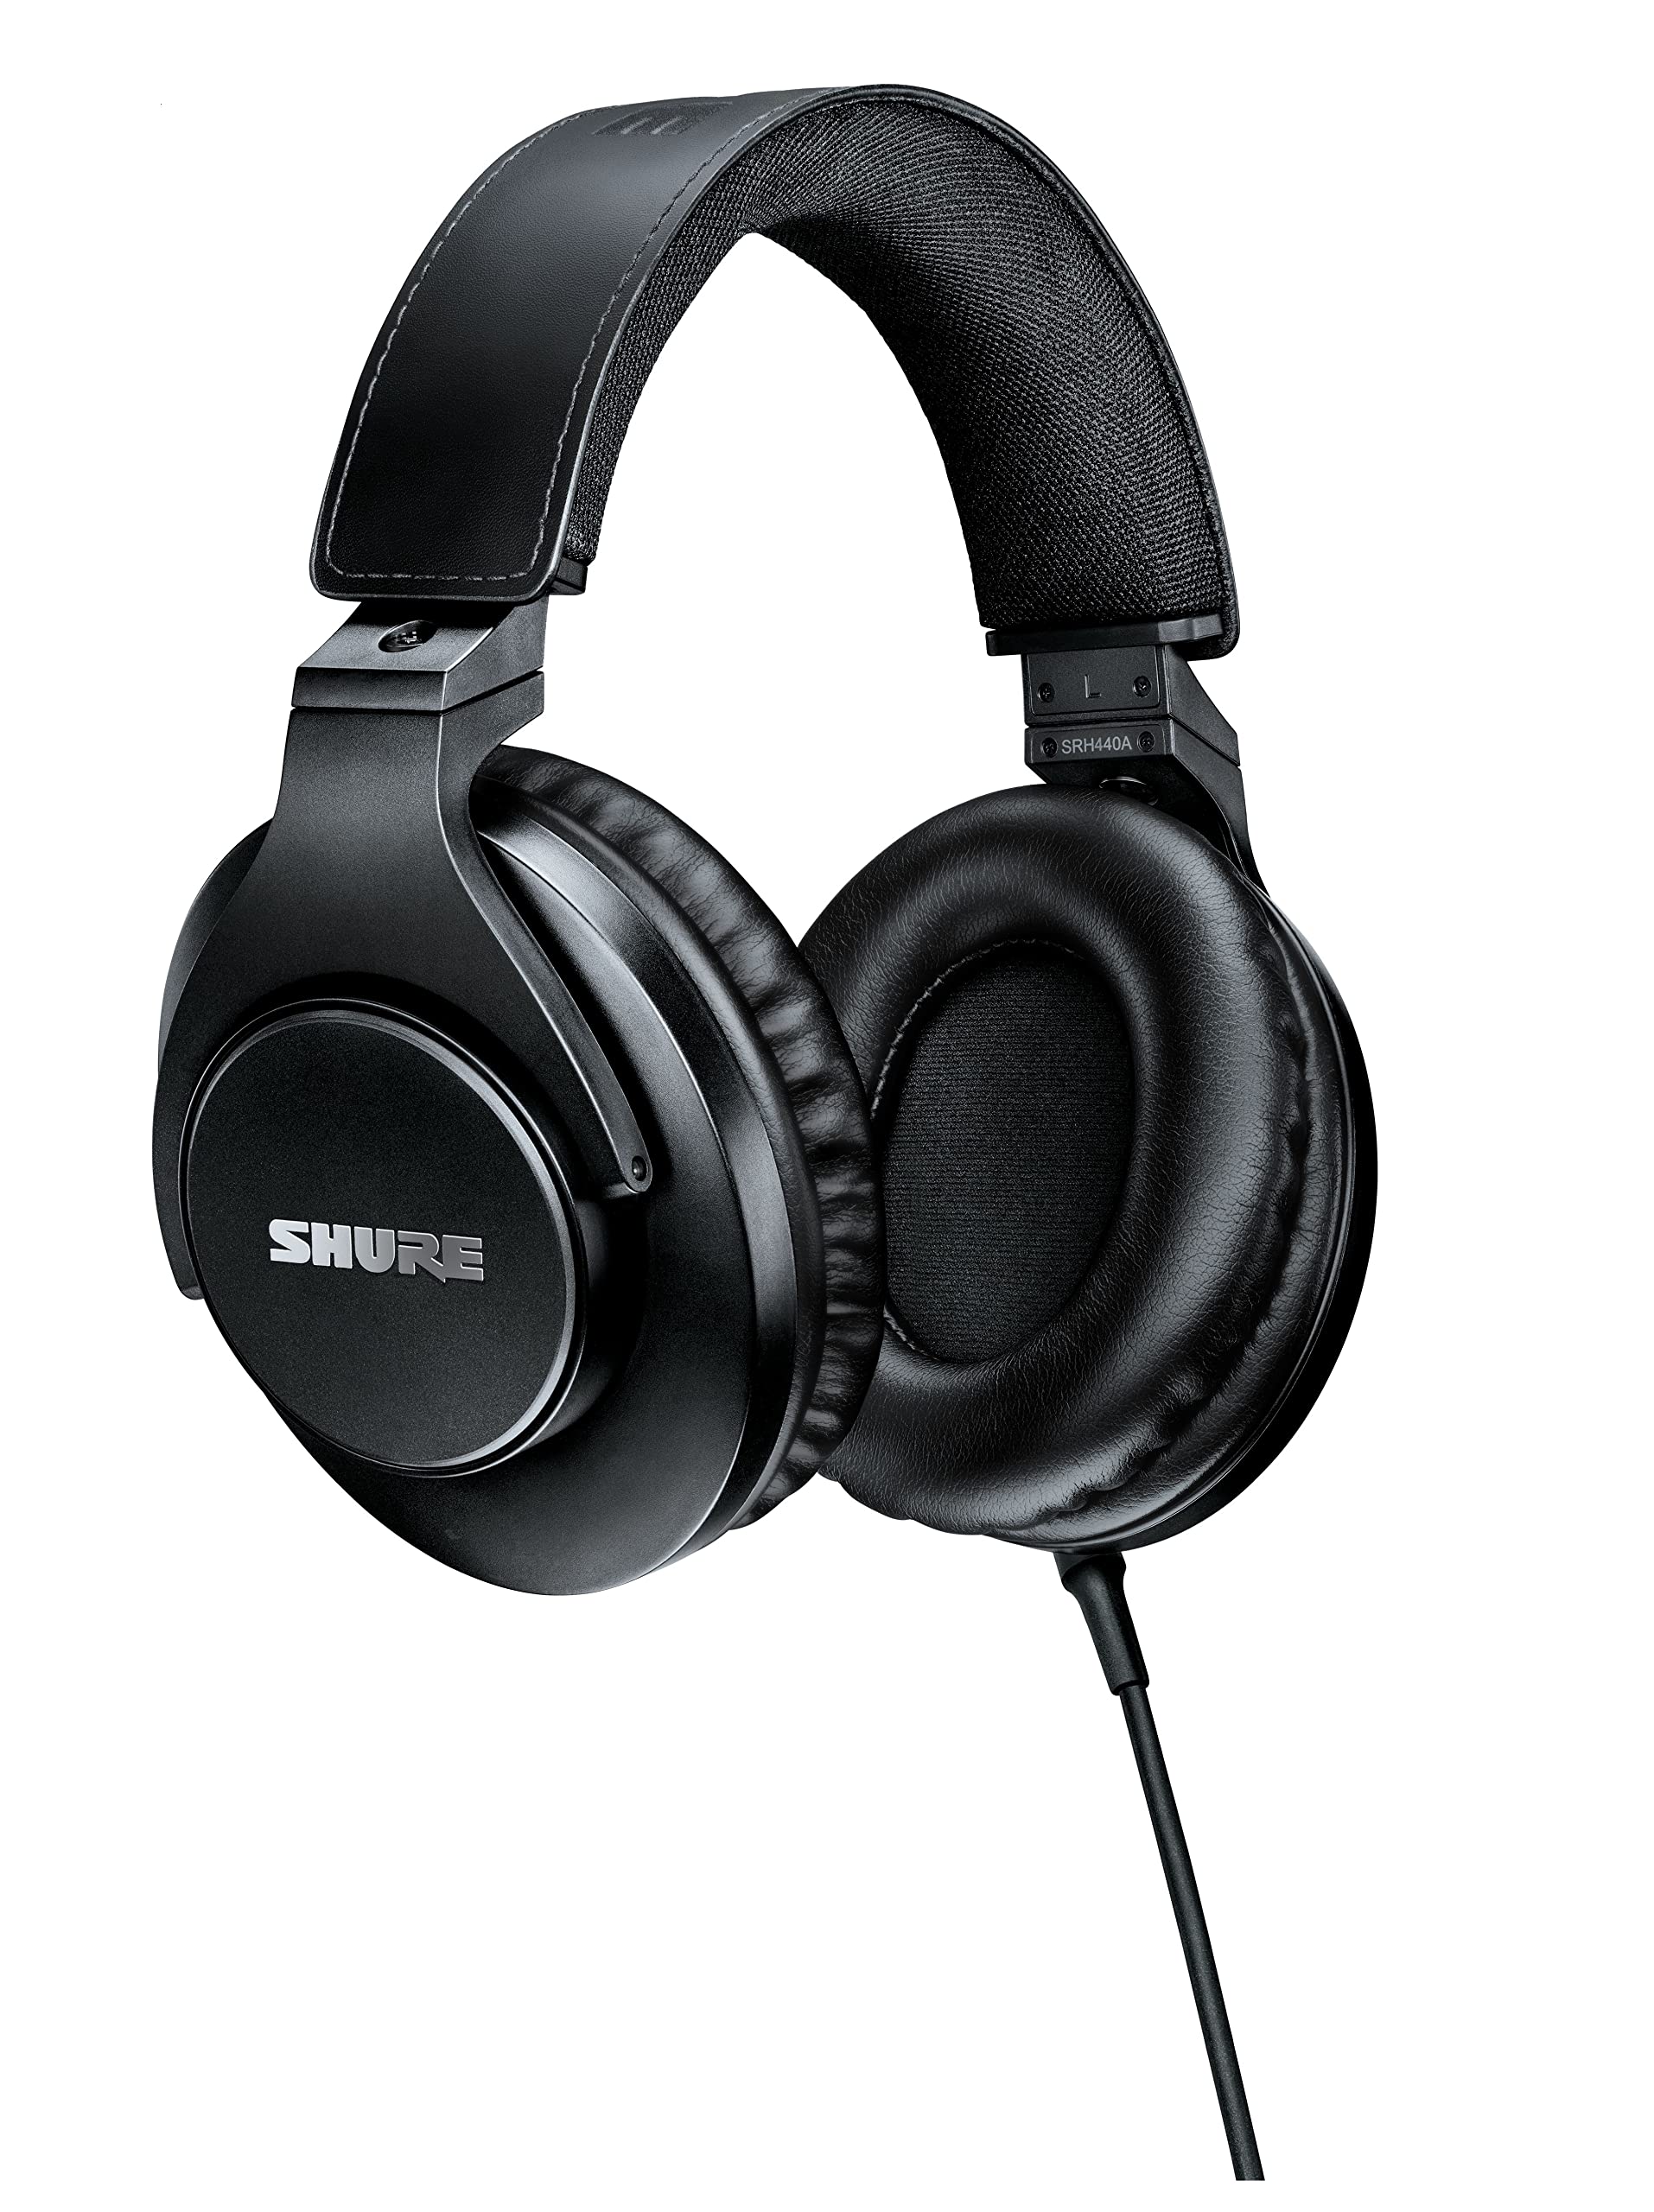 Shure SRH440A 用于监听和录音的包耳式有线耳机，专业工作室级，增强频率响应，适用于所有音频设备，可...